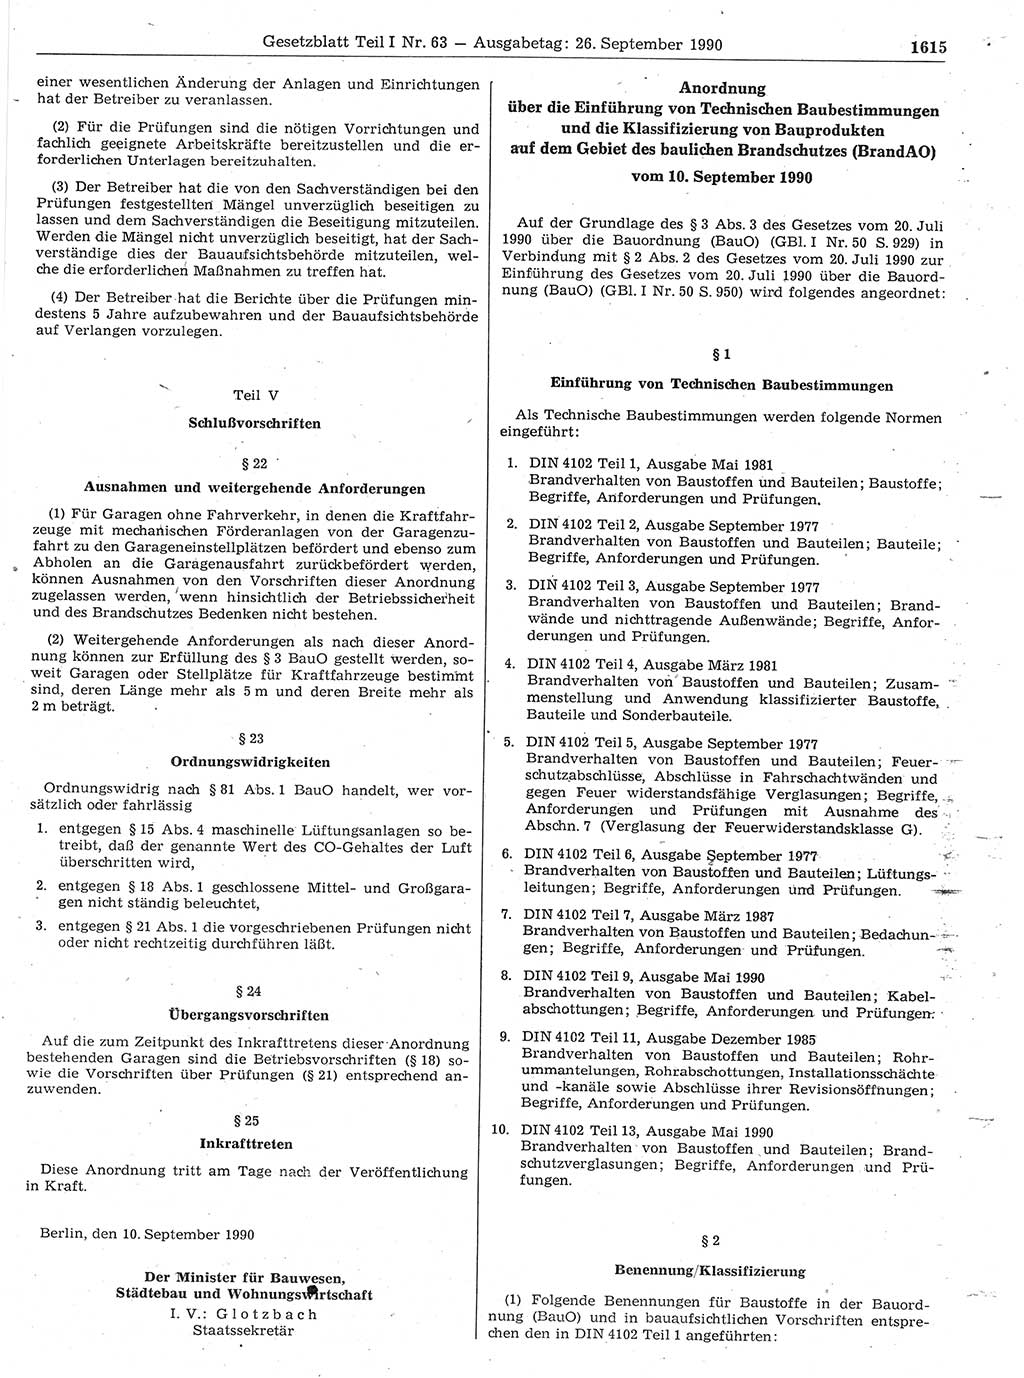 Gesetzblatt (GBl.) der Deutschen Demokratischen Republik (DDR) Teil Ⅰ 1990, Seite 1615 (GBl. DDR Ⅰ 1990, S. 1615)